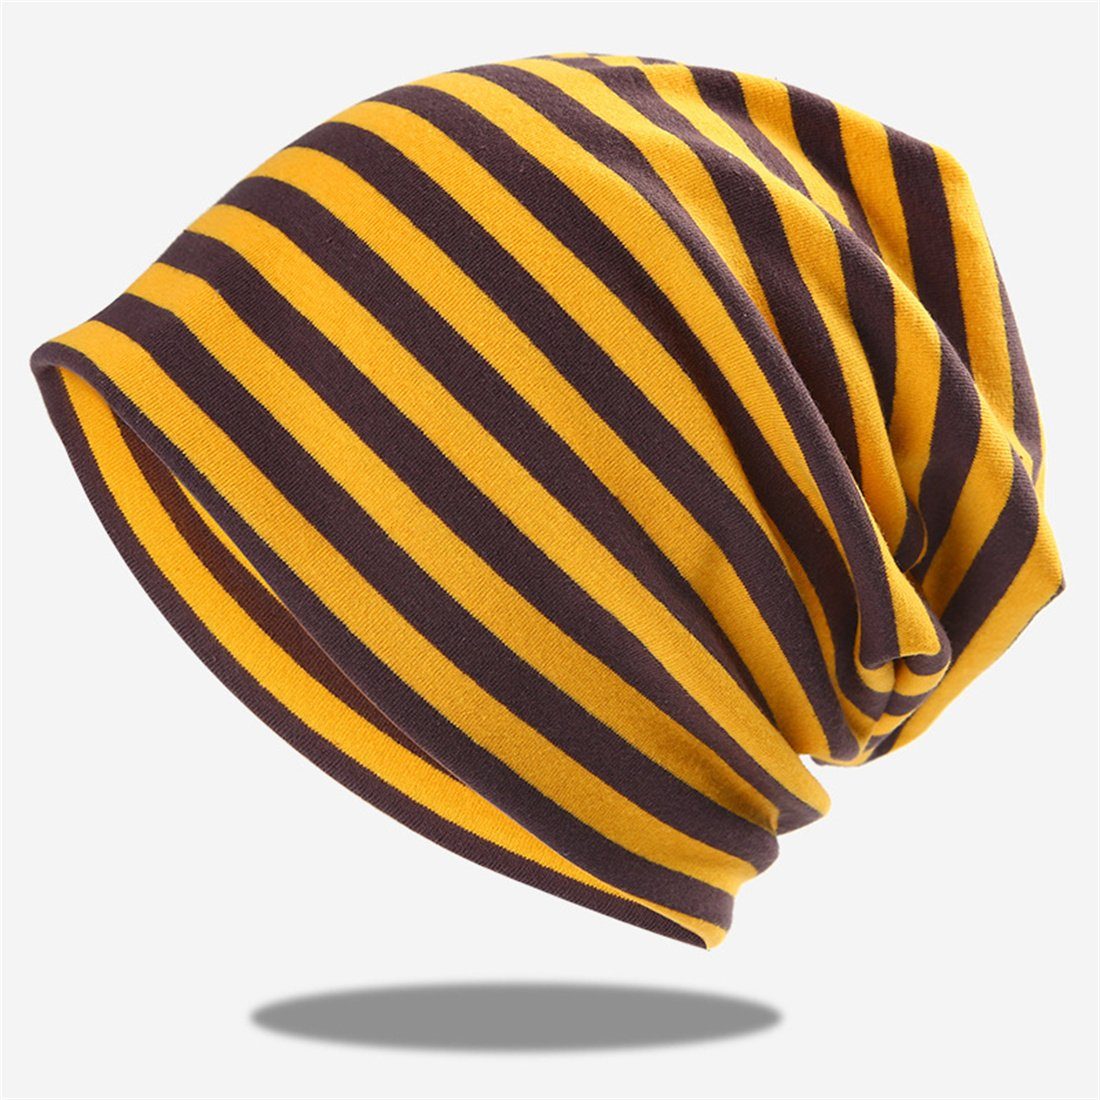 DÖRÖY Strickmütze Gestreifter Pullover Hut, gestrickte Mütze ohne Krempe,Unisex Wrap Hat Gelb